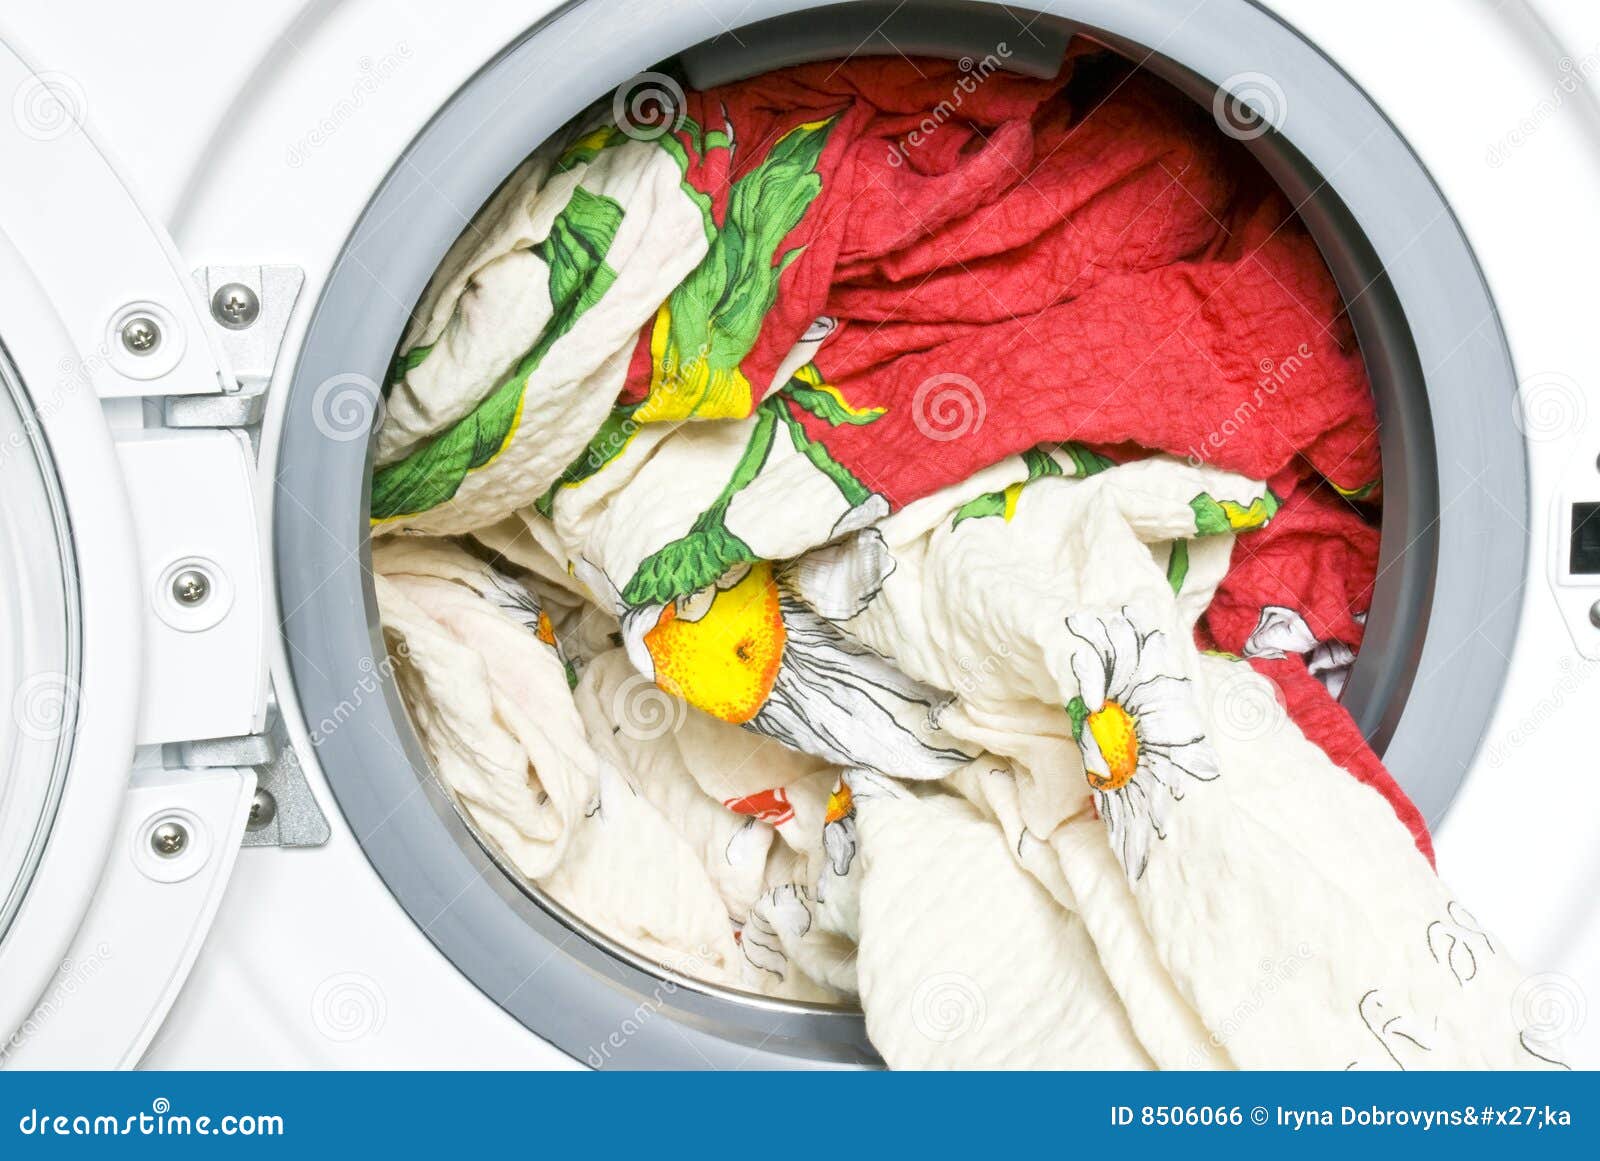 Как стирать одеяло в машинке. Одеяло в стиральной машине. Стирка одеяла. Стирка одеяла в стиральной машине. Стирка одеяла в прачечной.